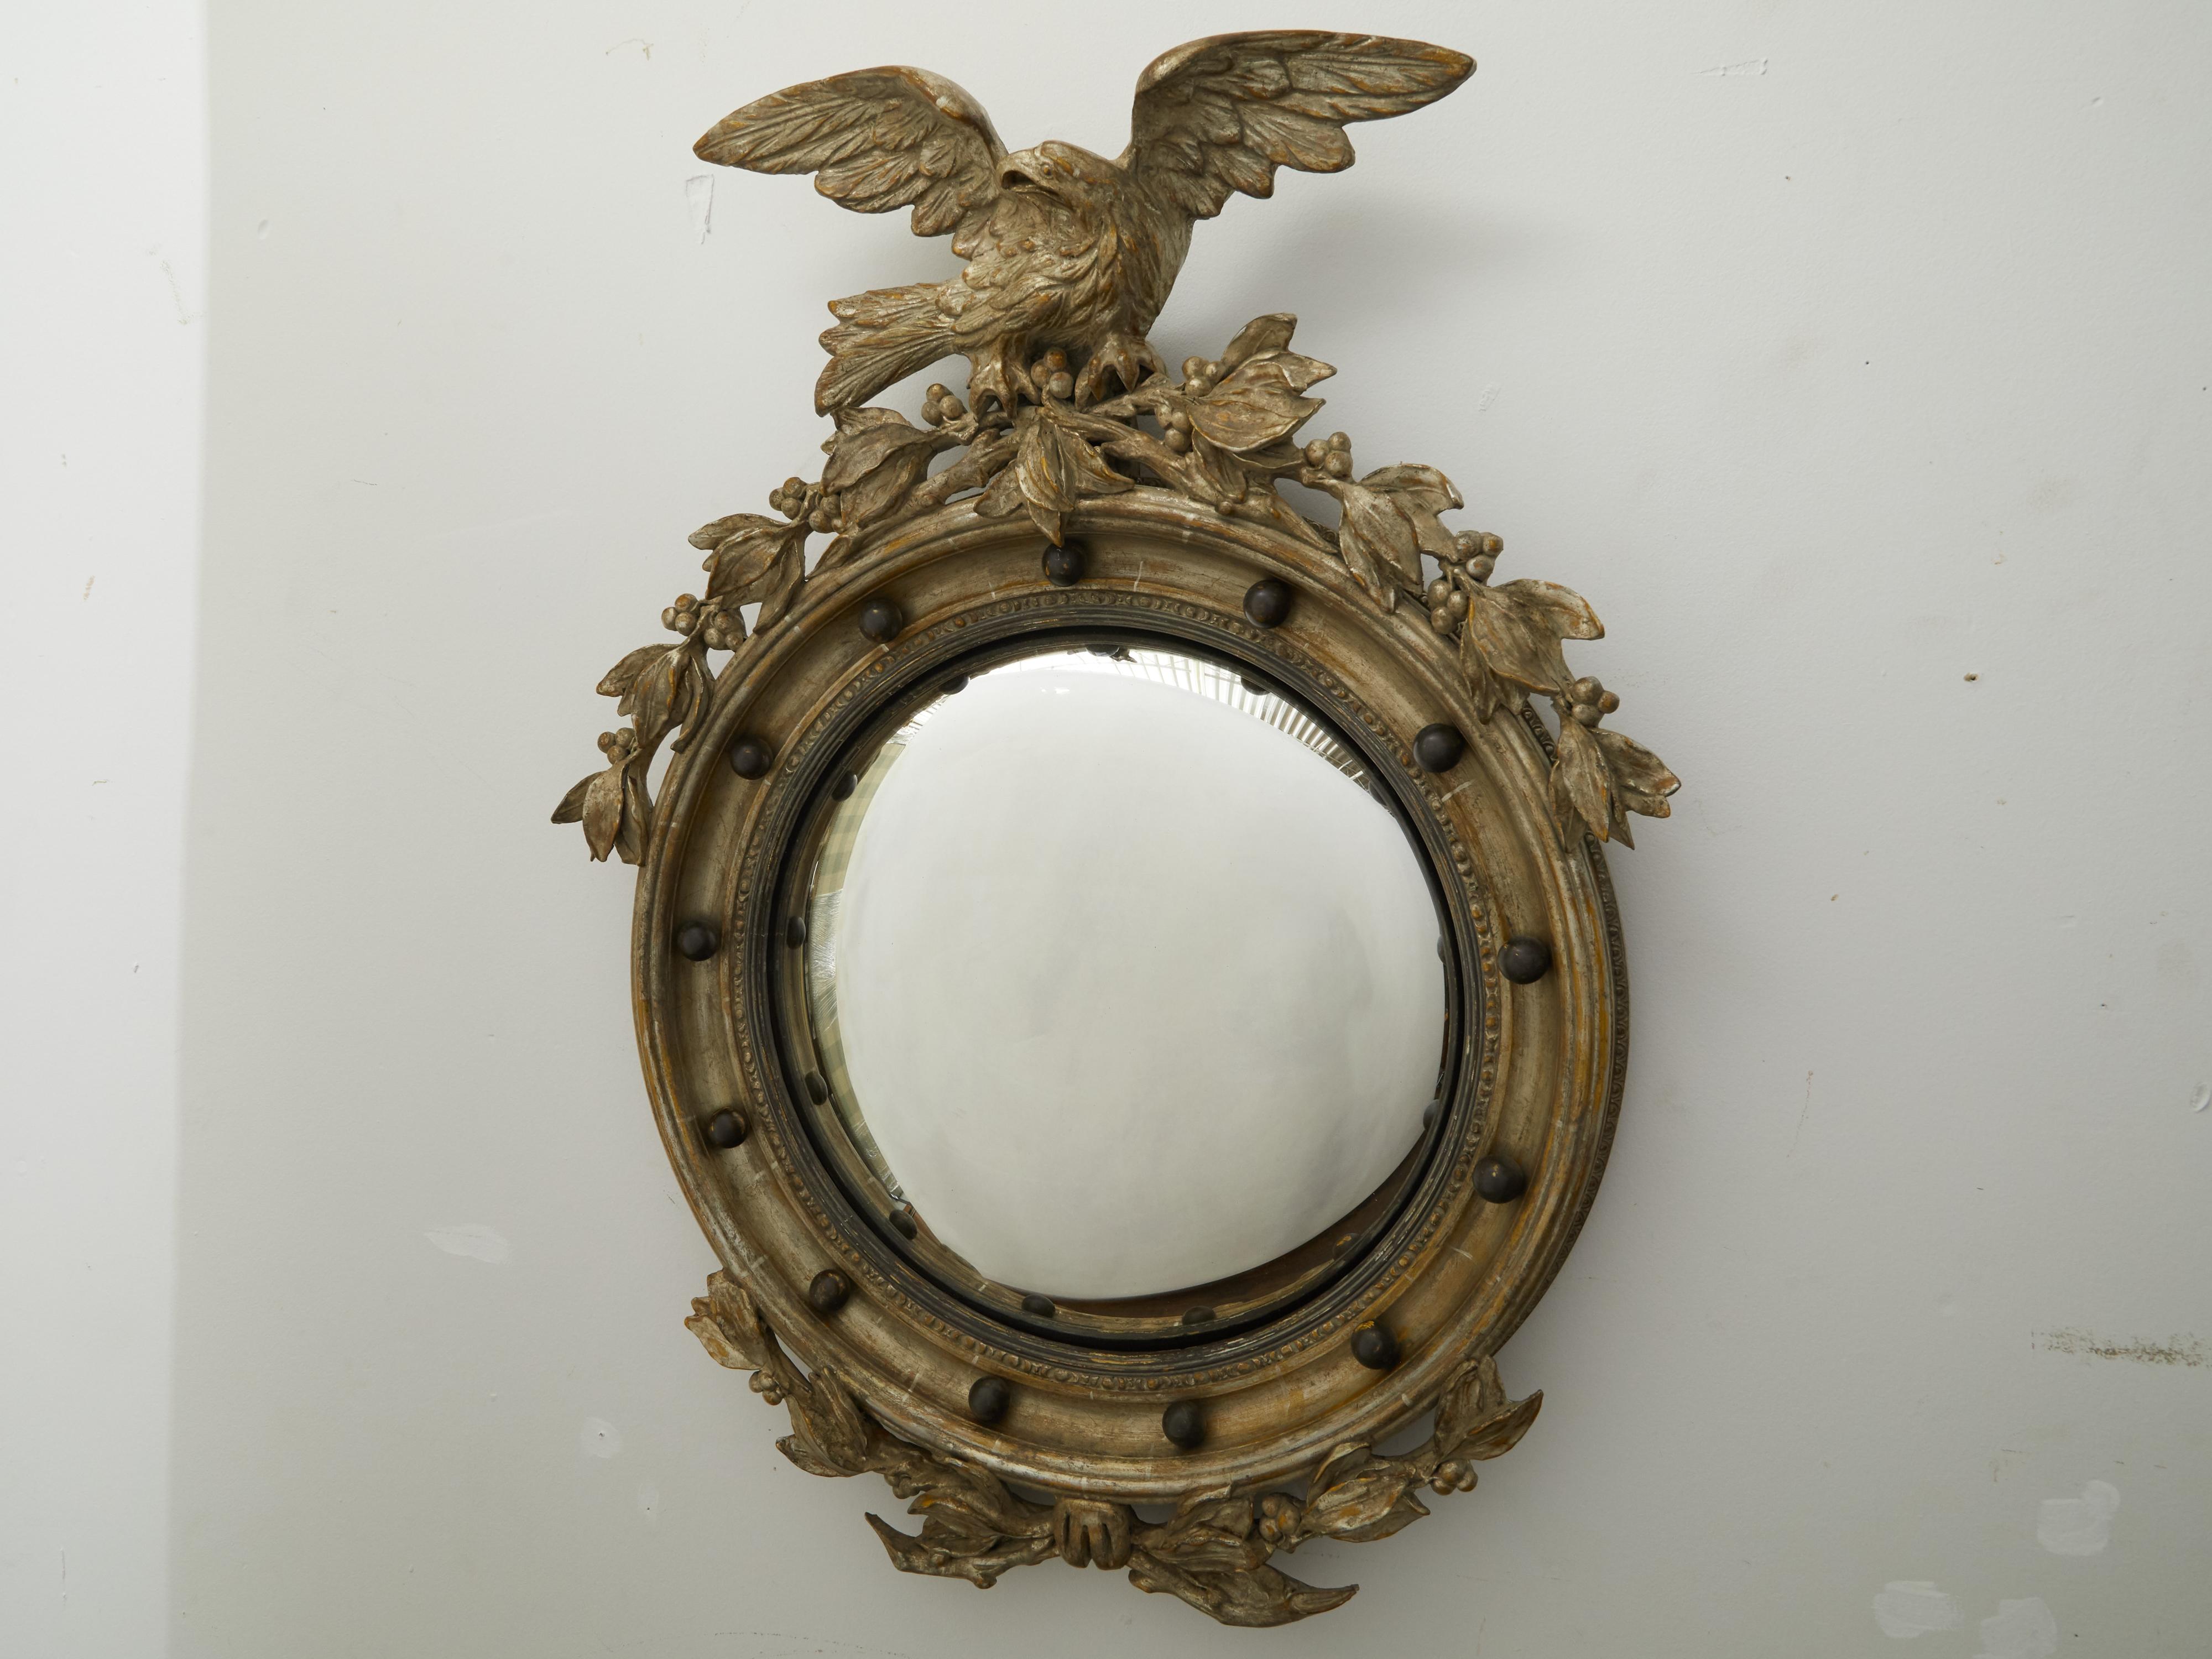 Ein englischer, vergoldeter, konvexer Girandole-Spiegel mit Adler-Motiv aus dem frühen 20. Jahrhundert. Dieser in den ersten Jahren des 20. Jahrhunderts in England hergestellte silberne Girandolenspiegel fällt durch seinen Adler auf, der den oberen